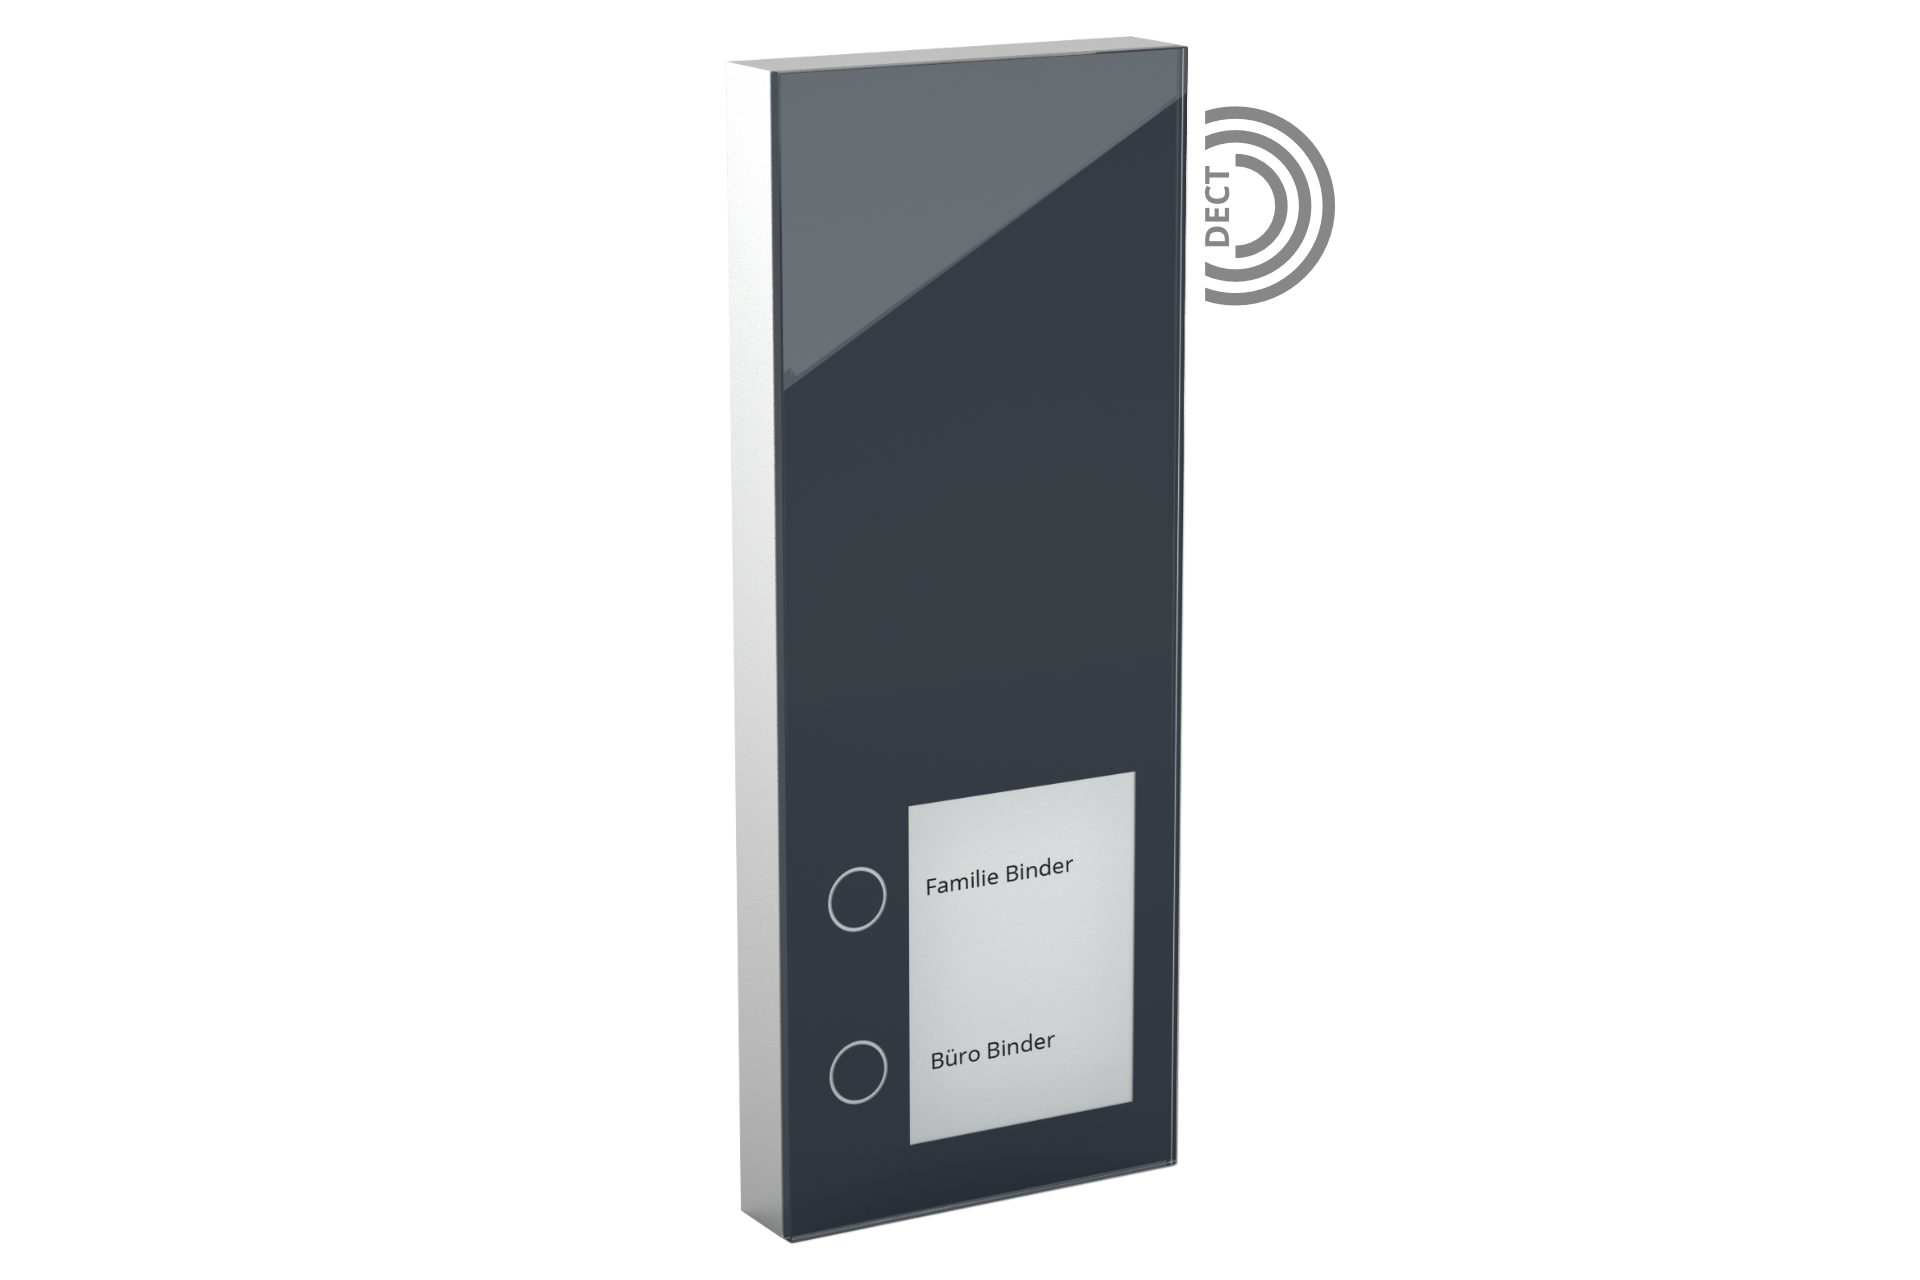 DoorLine Slim DECT Smart der mit AVM zur Home Tür-Sprechanlage Türklingel (per Knopfdrück gekoppelt) FRITZ!Box Anthrazit